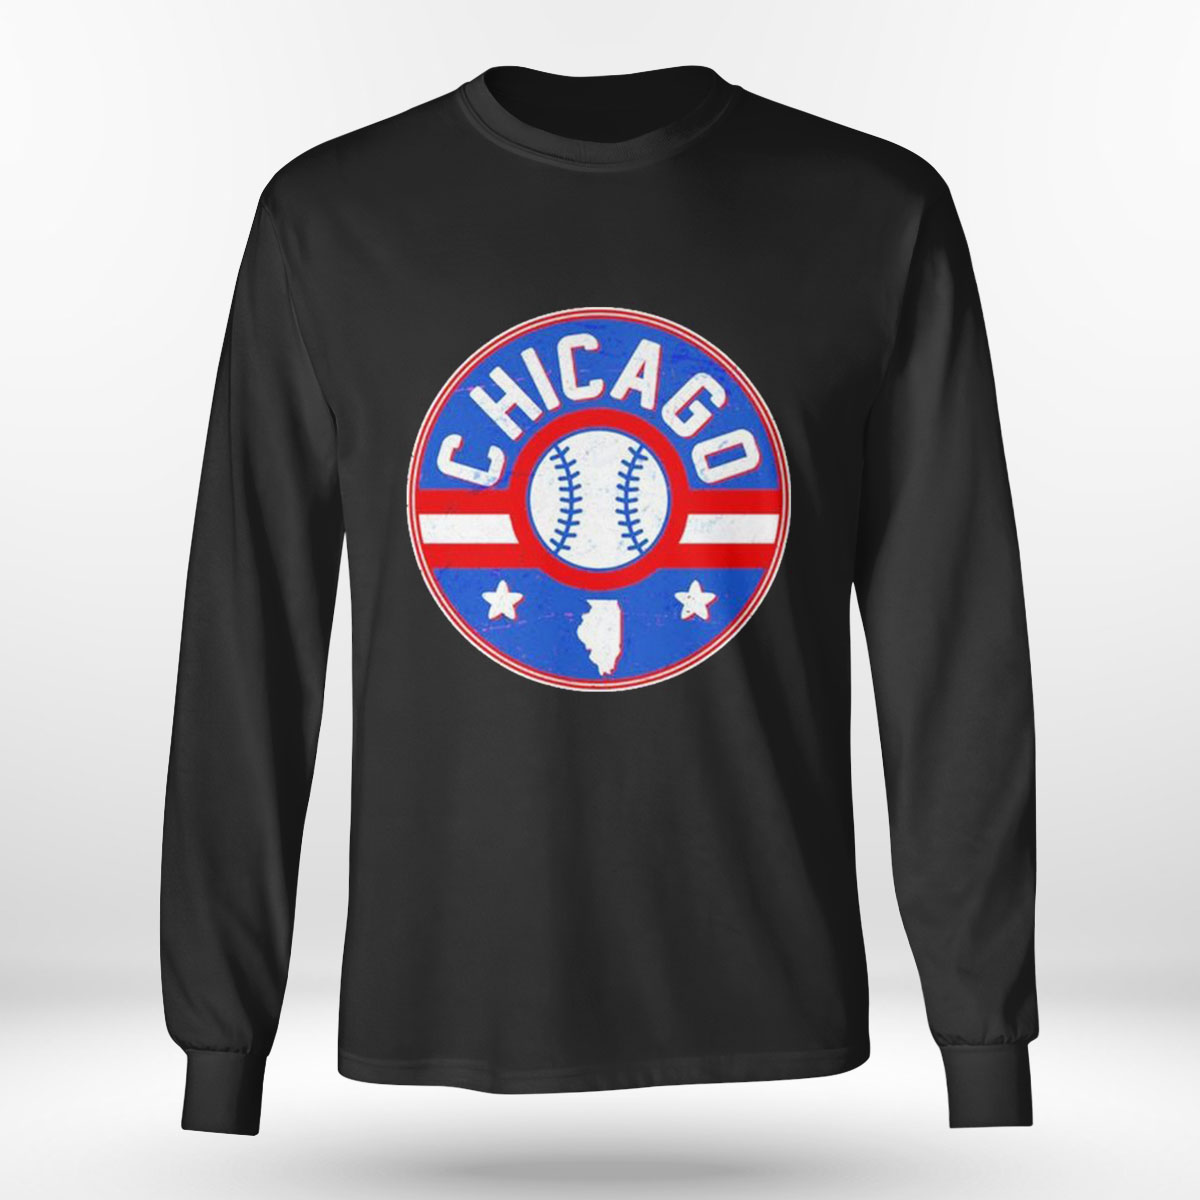 Vintage Chicago Baseball Emblem T-shirt